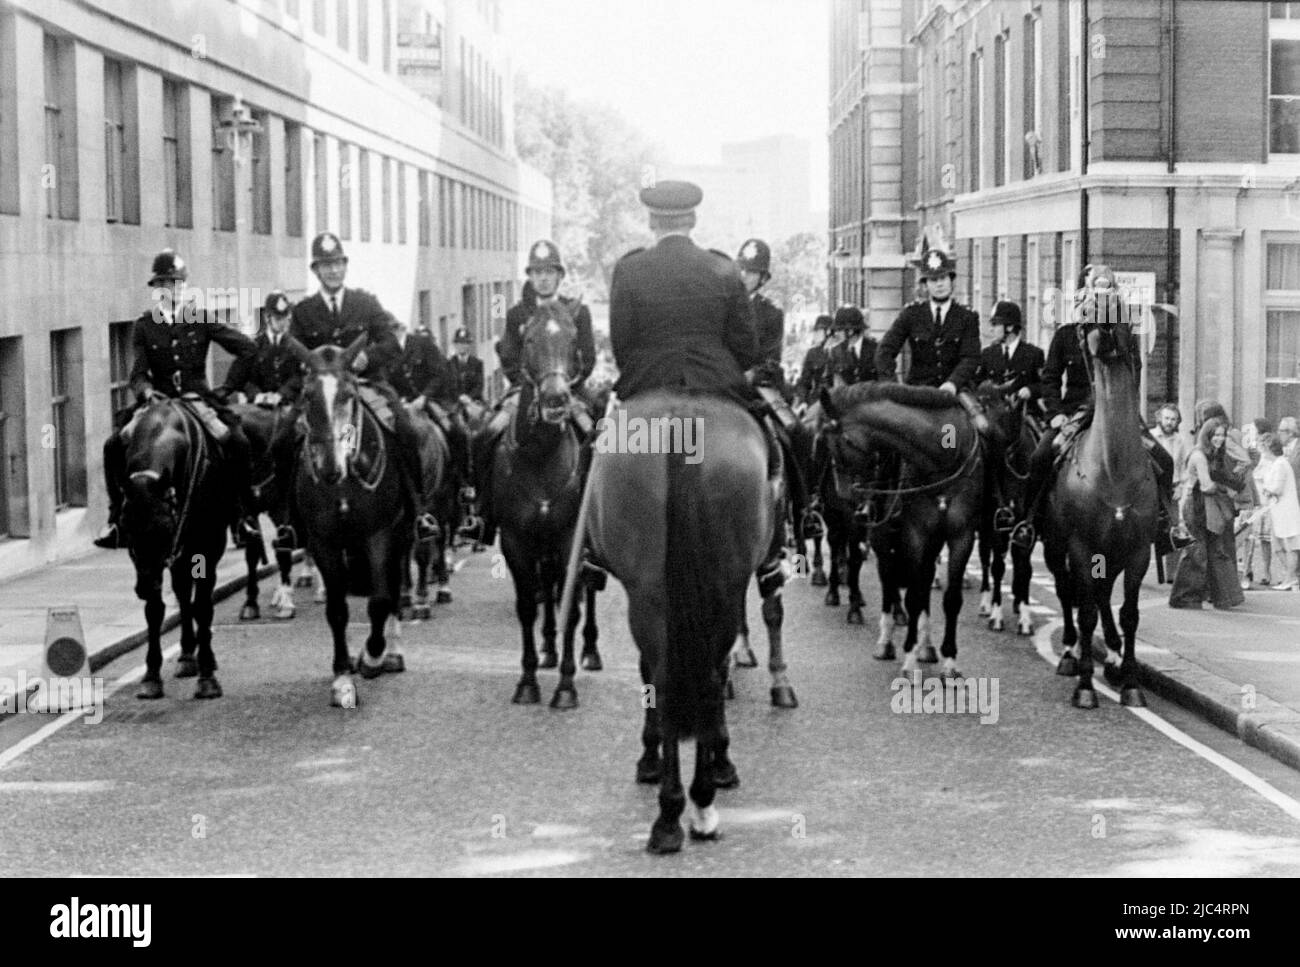 Une marche du Front National à l'extrême droite, Londres, Angleterre, Royaume-Uni, entourée de policiers, septembre 1978. Le même jour, une marche anti-nazie de la Ligue a eu lieu à Londres, de sorte que la police était là en grand nombre pour maintenir les deux marches à part et pour traiter tout conflit entre elles. Banque D'Images